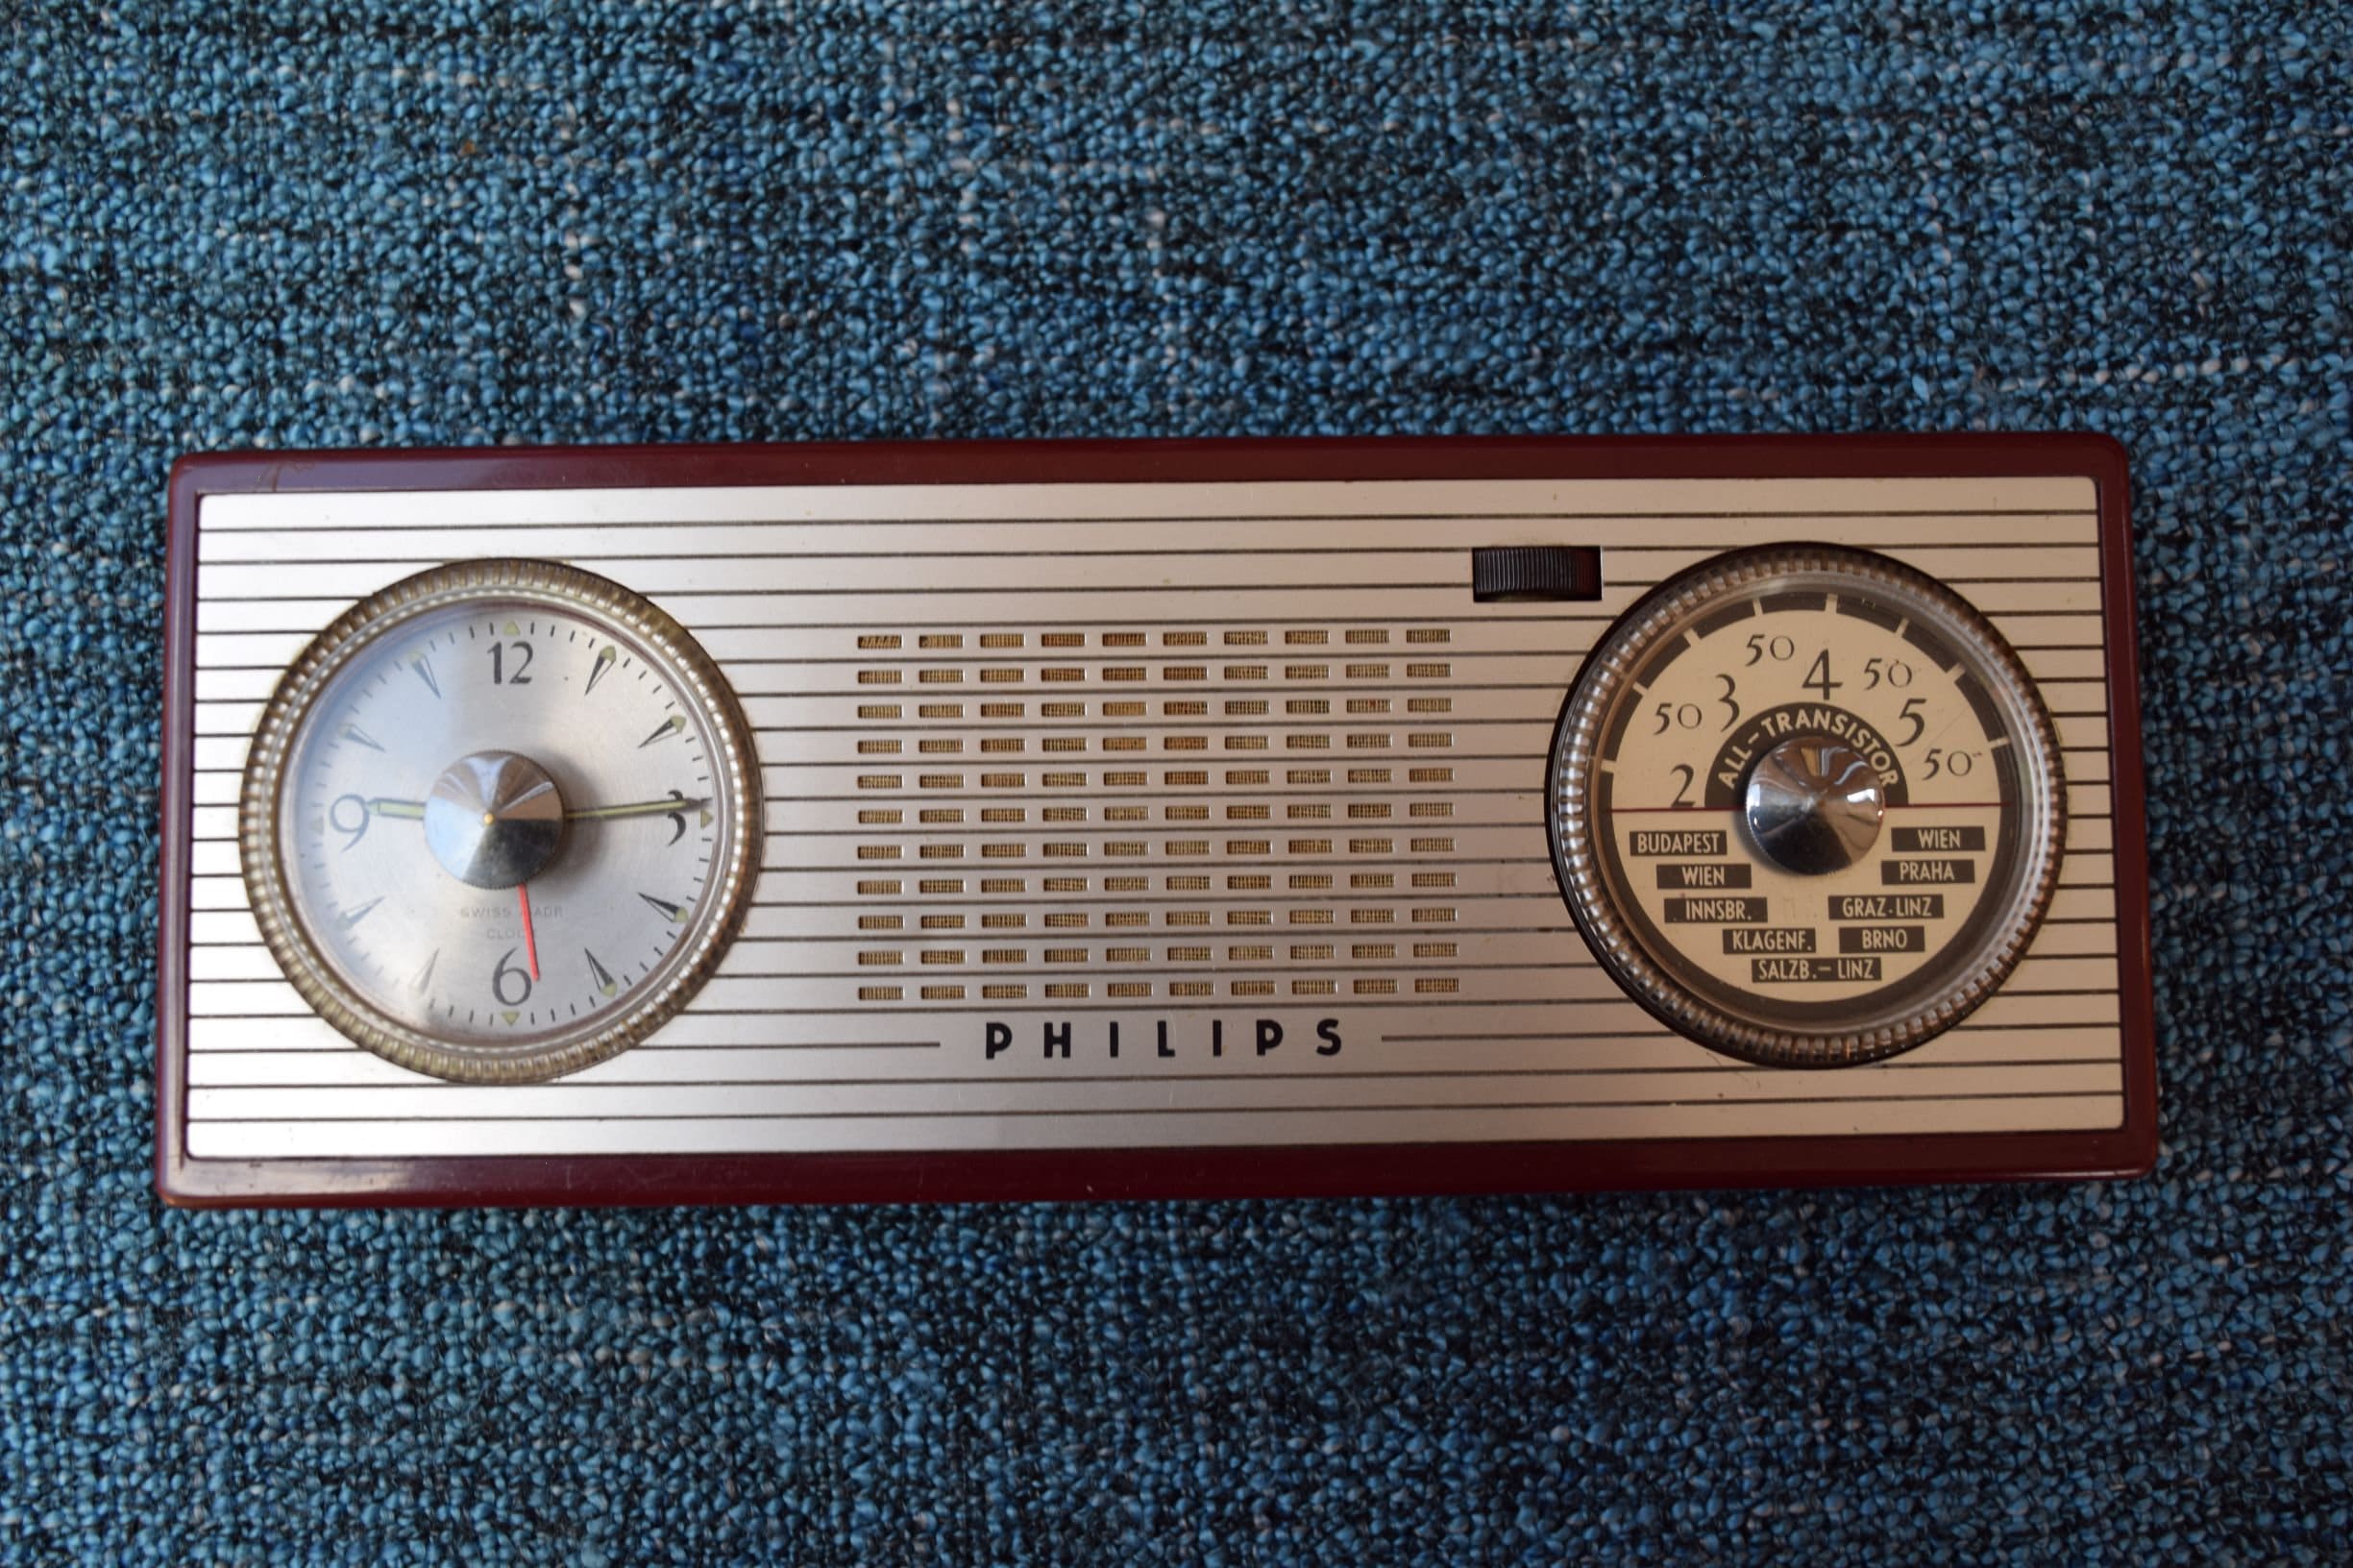 Philips All Transistor RADIO CLOCK 1980 - Etsy